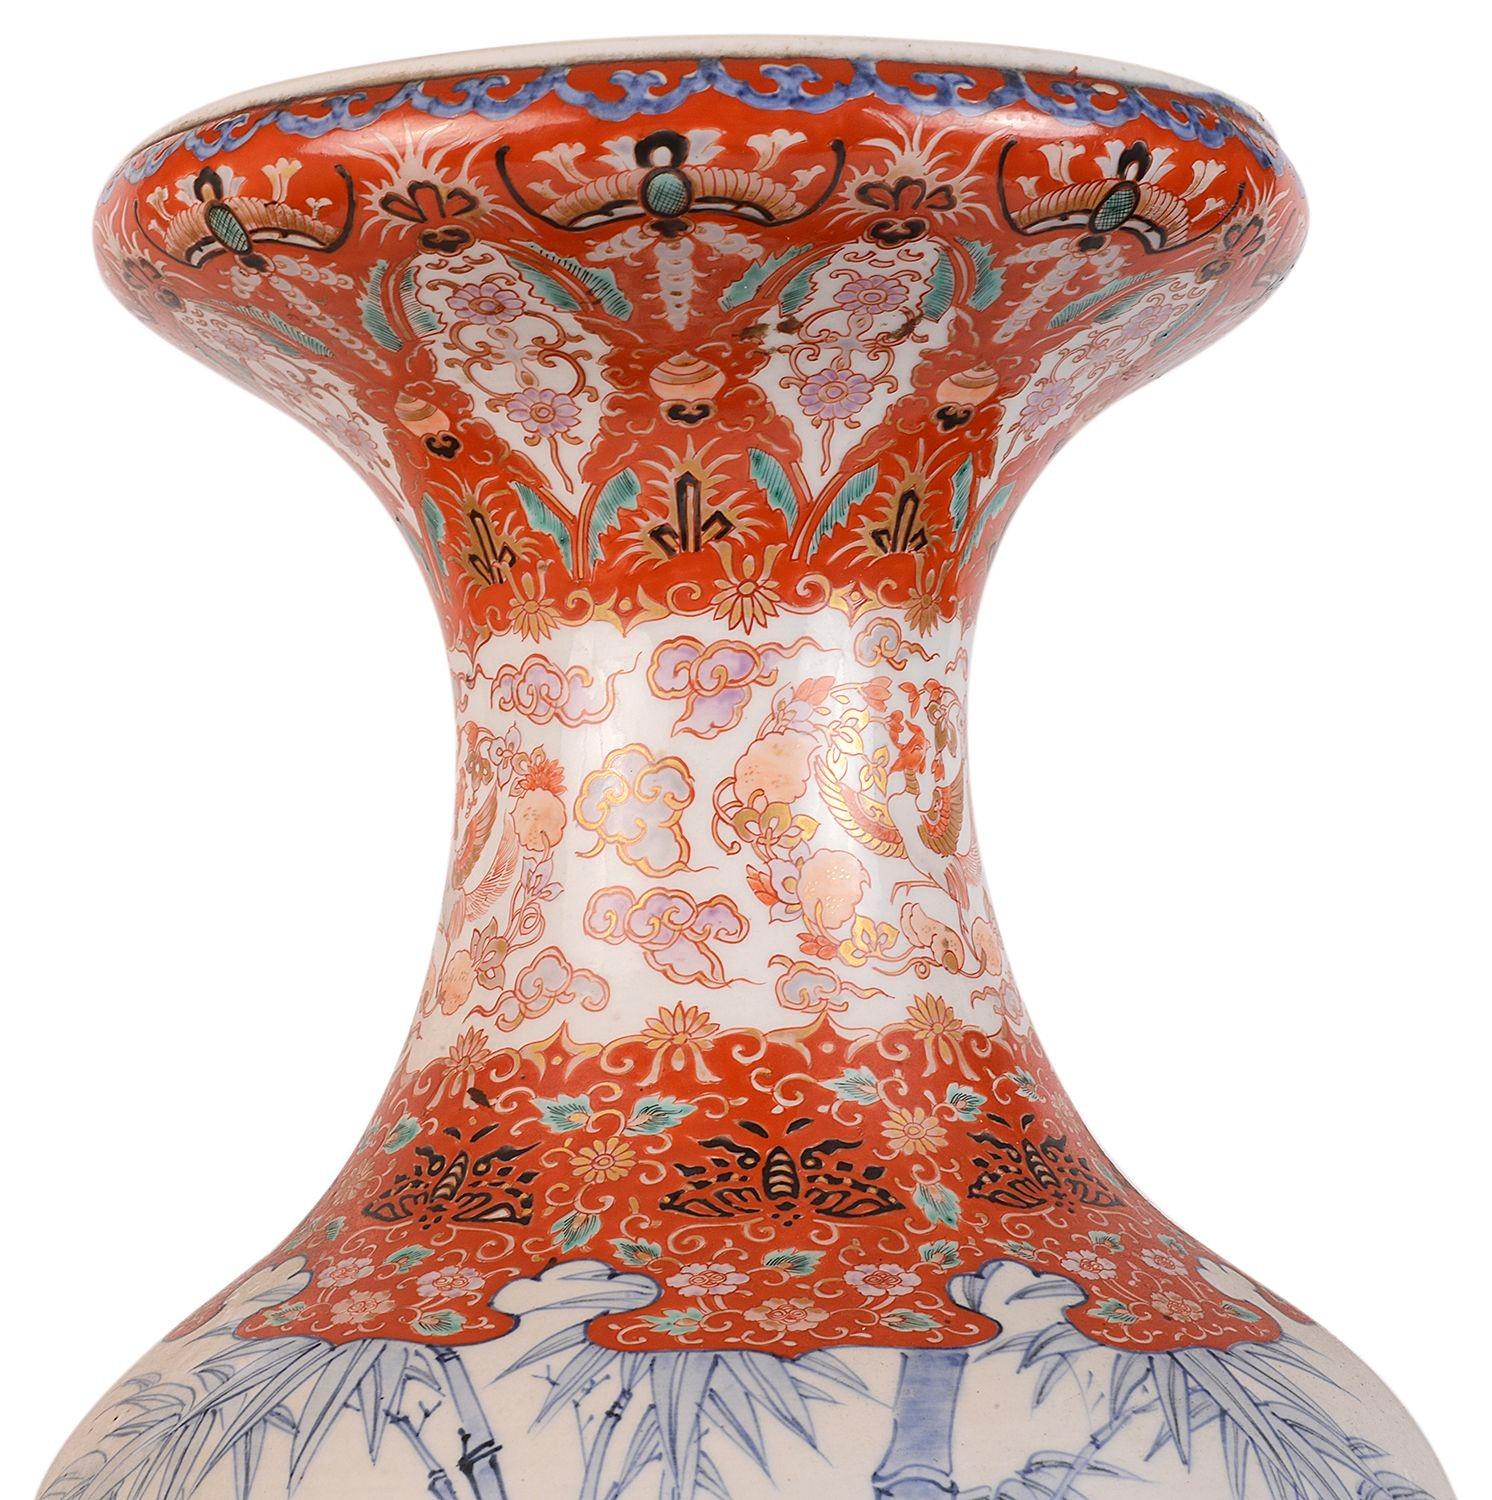 Un grand vase japonais Karango Imari de la fin du 19e siècle, de très bonne qualité, avec un motif classique merveilleusement décoré en haut et en bas, le panneau central présentant des scènes de bambous peintes à la main en bleu et blanc.
Signé à